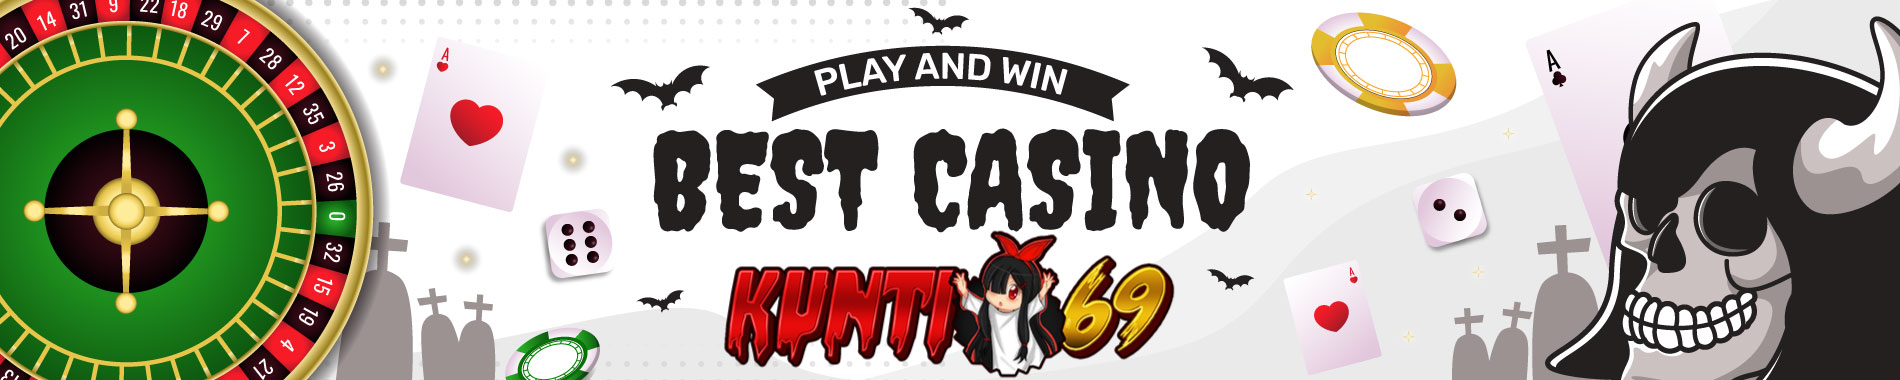 Kunti69 casino online